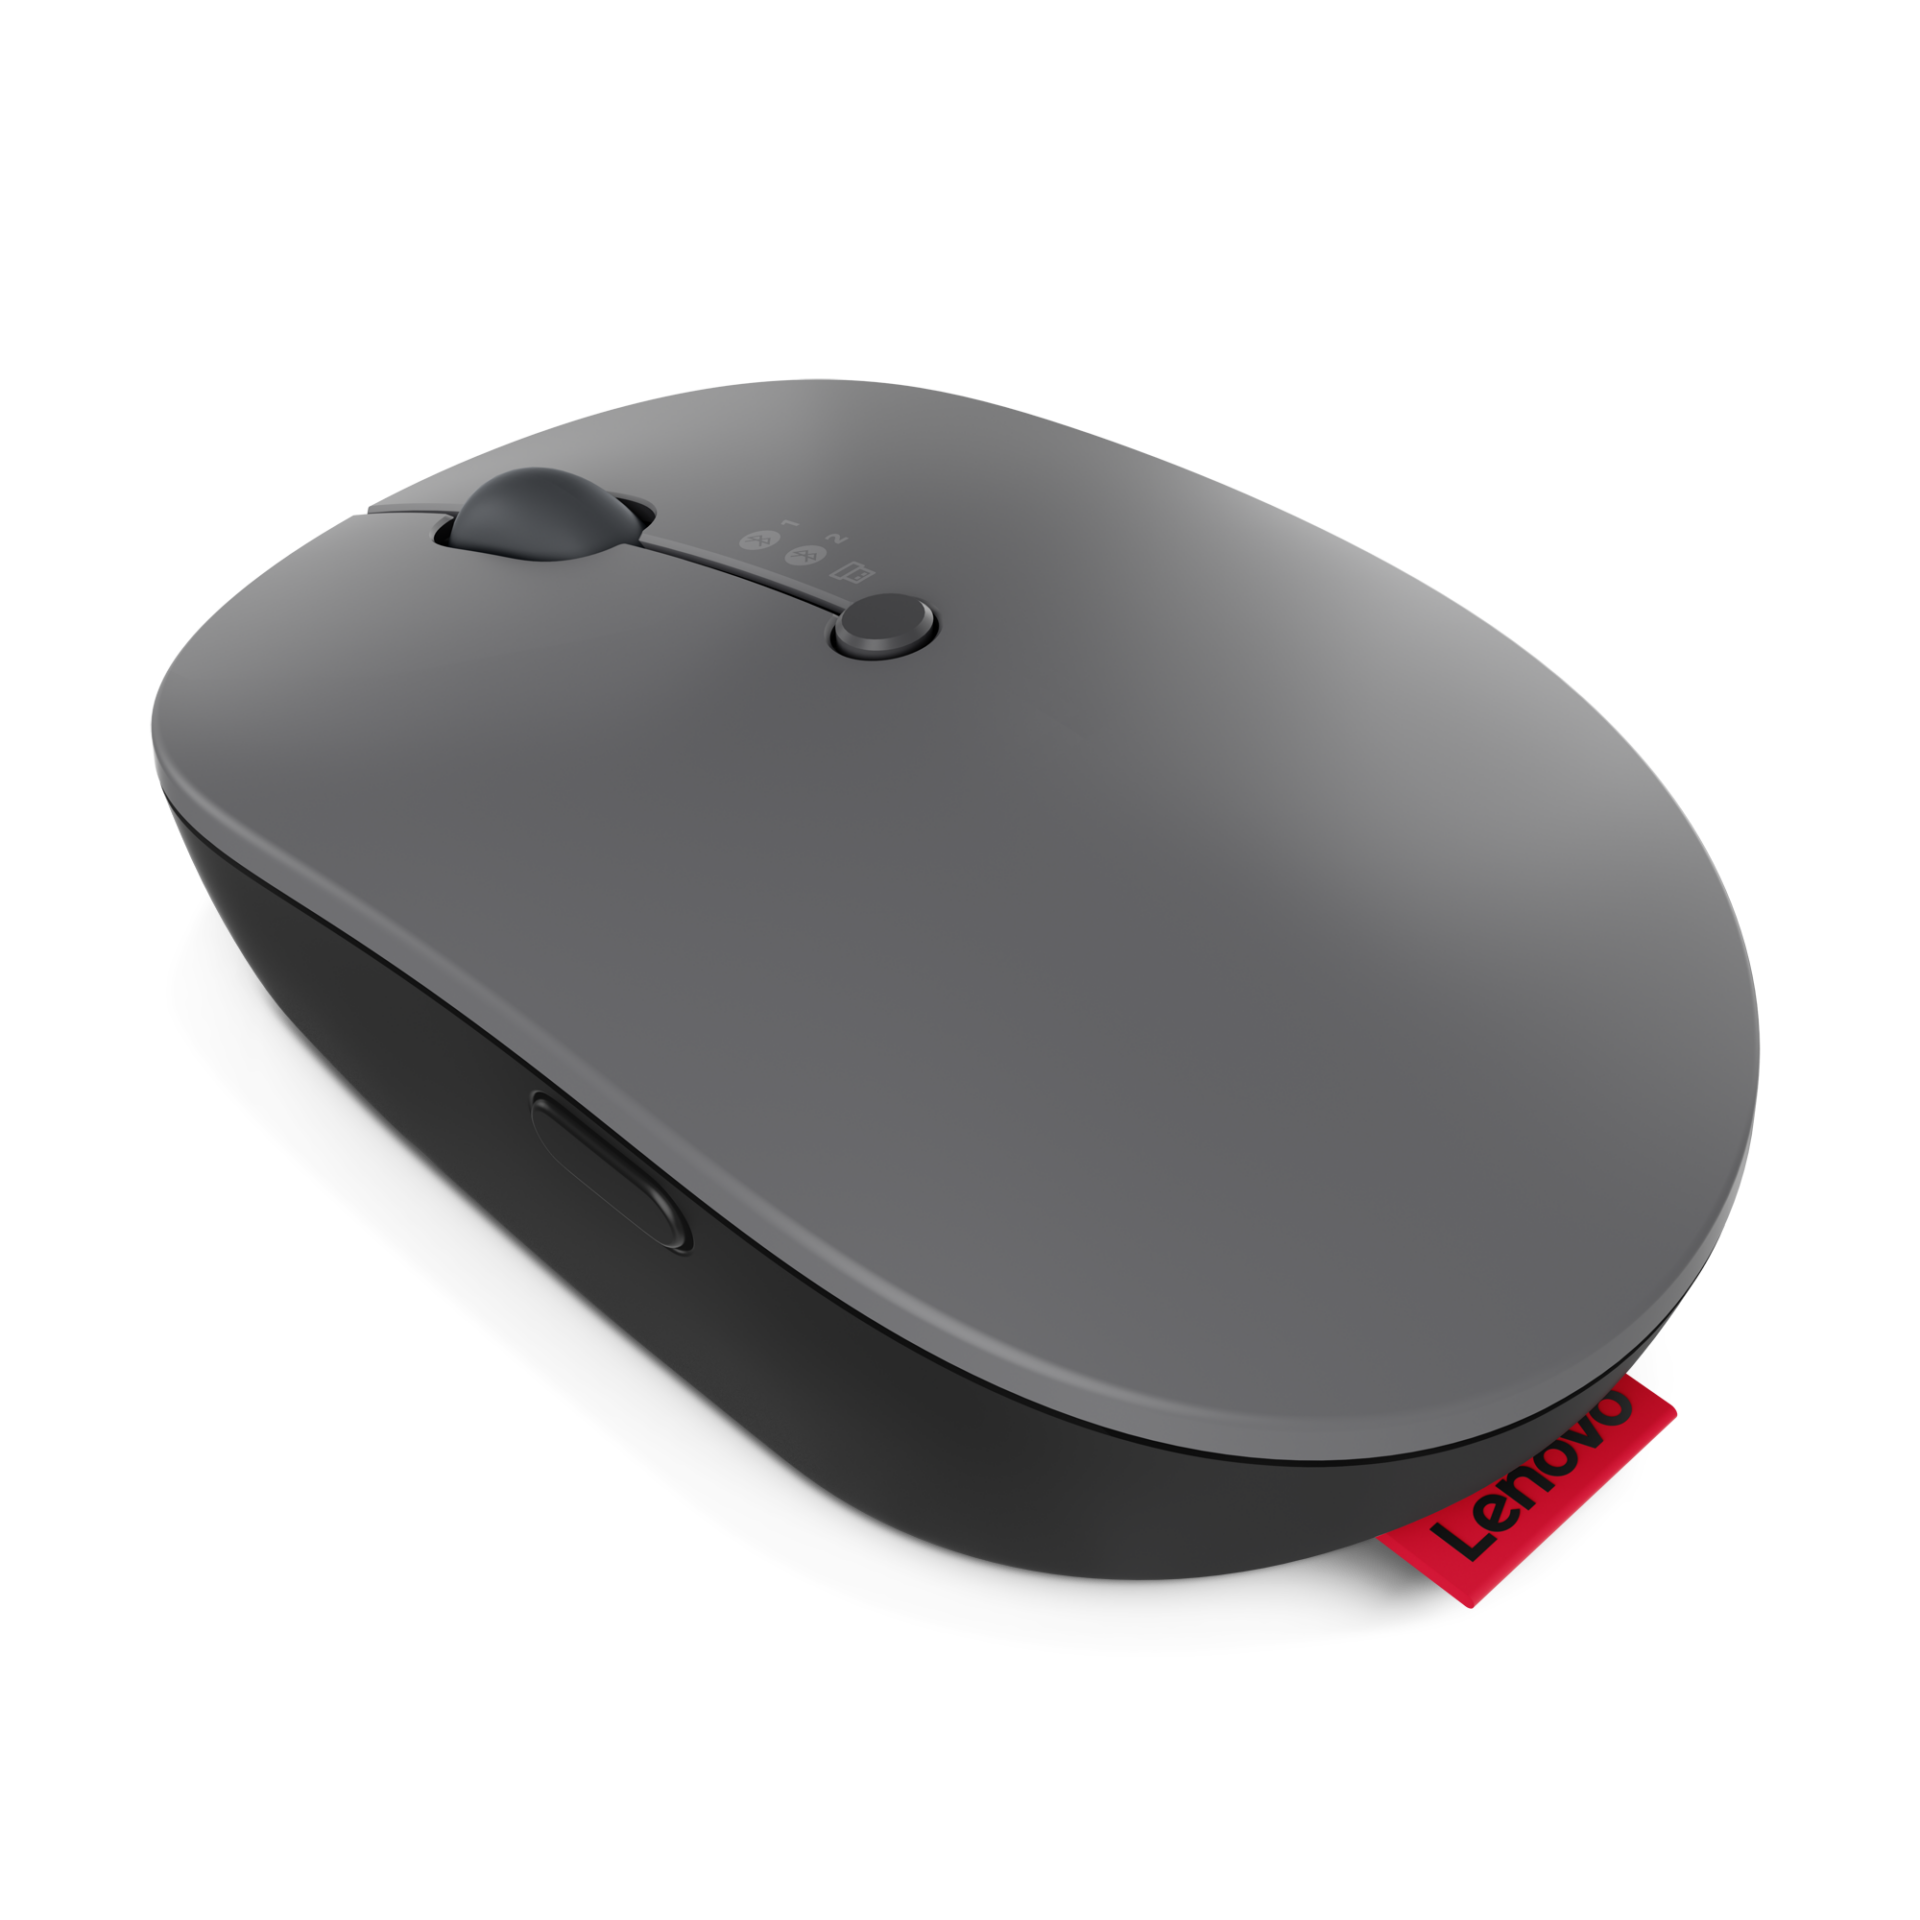 Lenovo Go Wireless Multi-Device Mouse, mouse multi-dispositivo com carregamento sem fio (!!!) é homologado pela Anatel